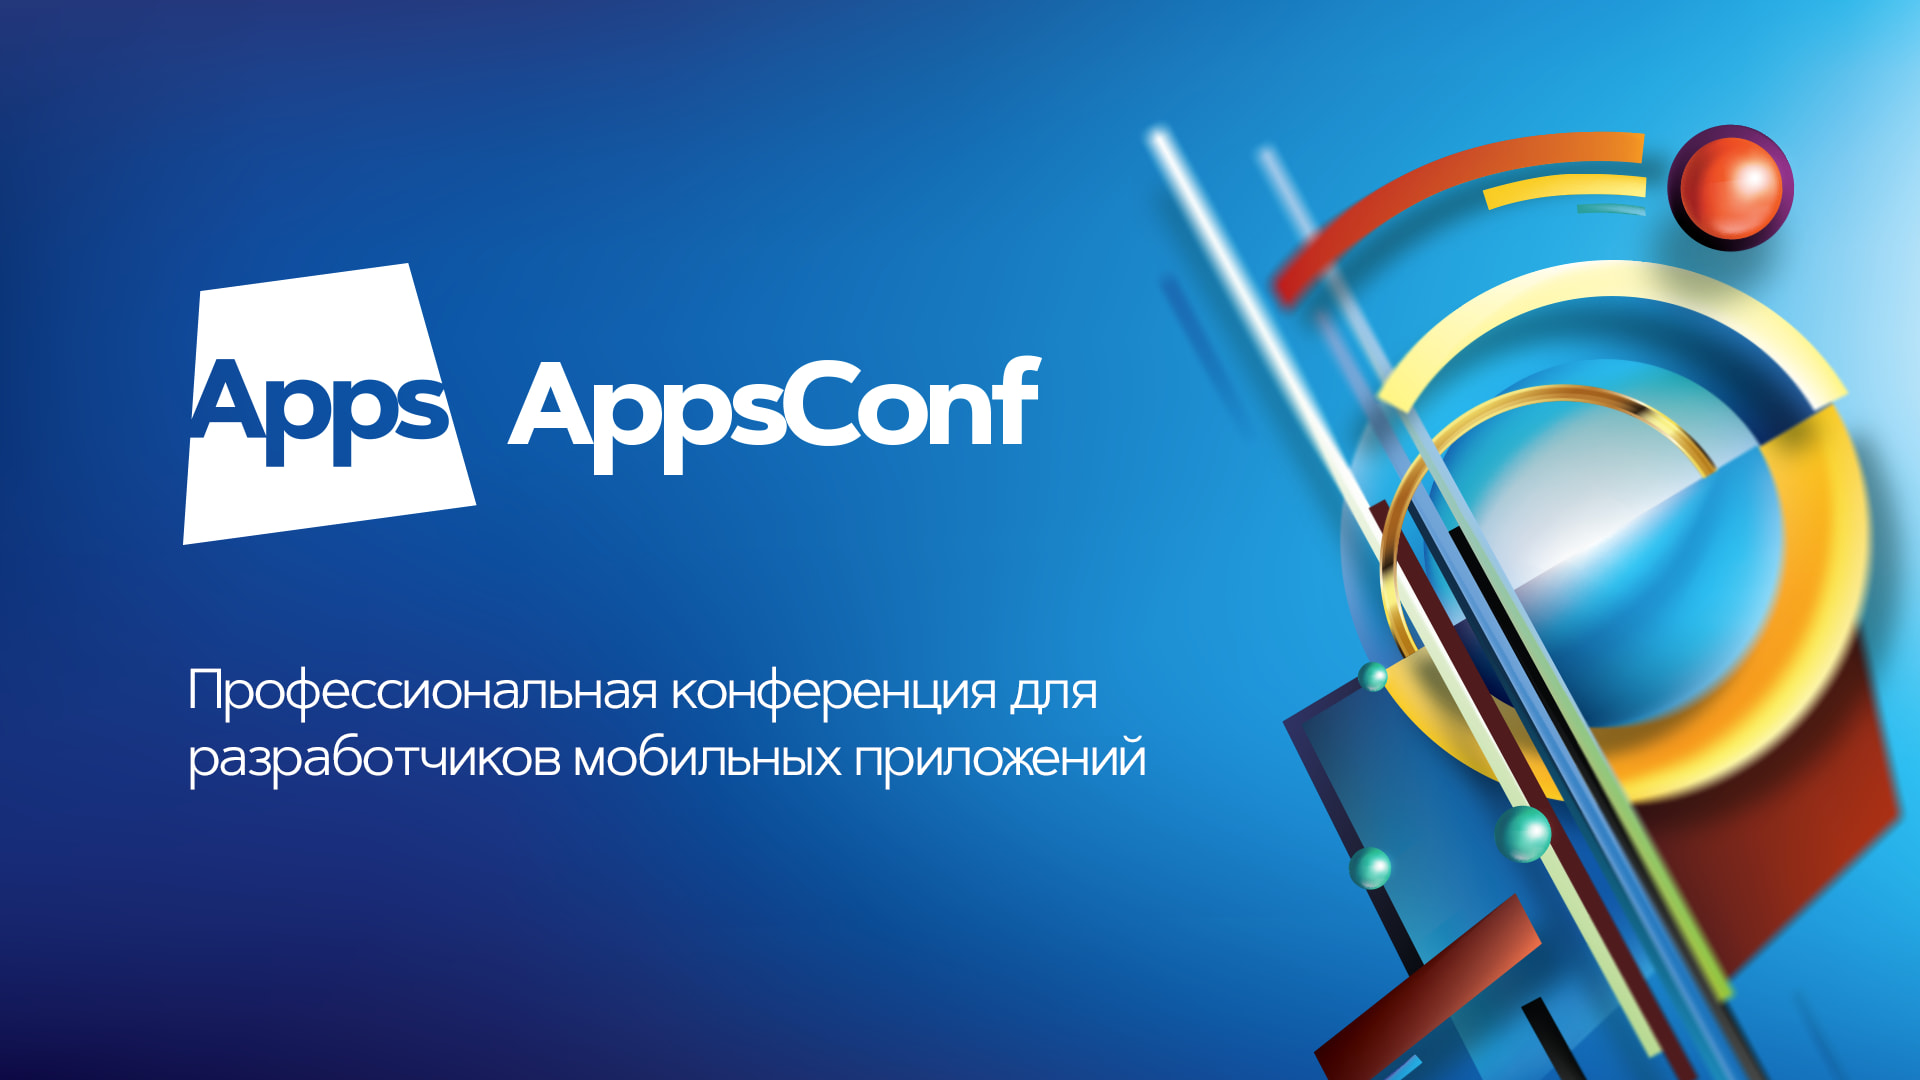 Конференция для разработчиков мобильных приложений AppsConf